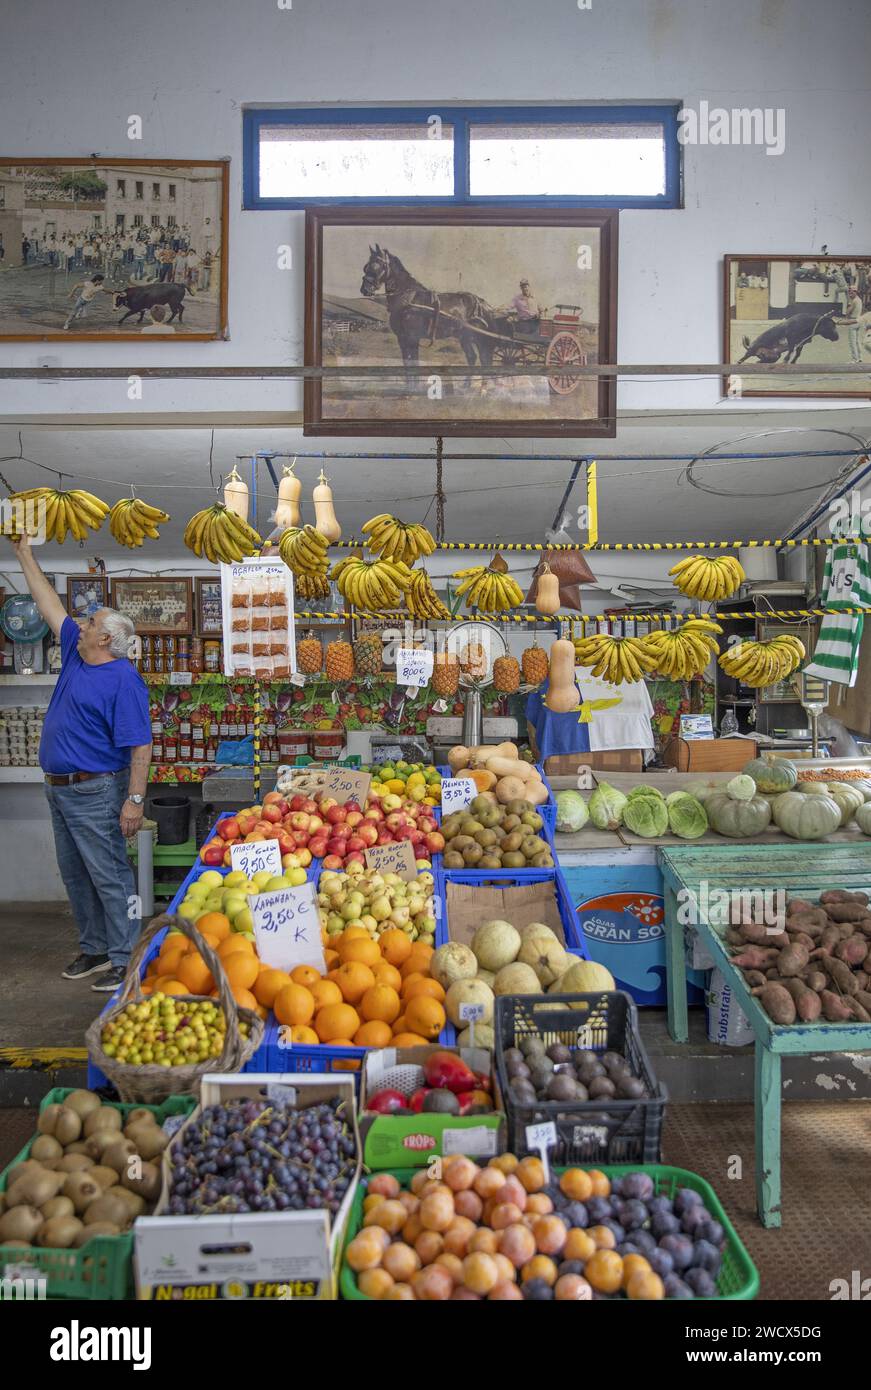 Portugal, archipel des Açores, île de Terceira, Angra do Heroismo, vendeur de fruits sur son étal dans un marché du centre historique Banque D'Images